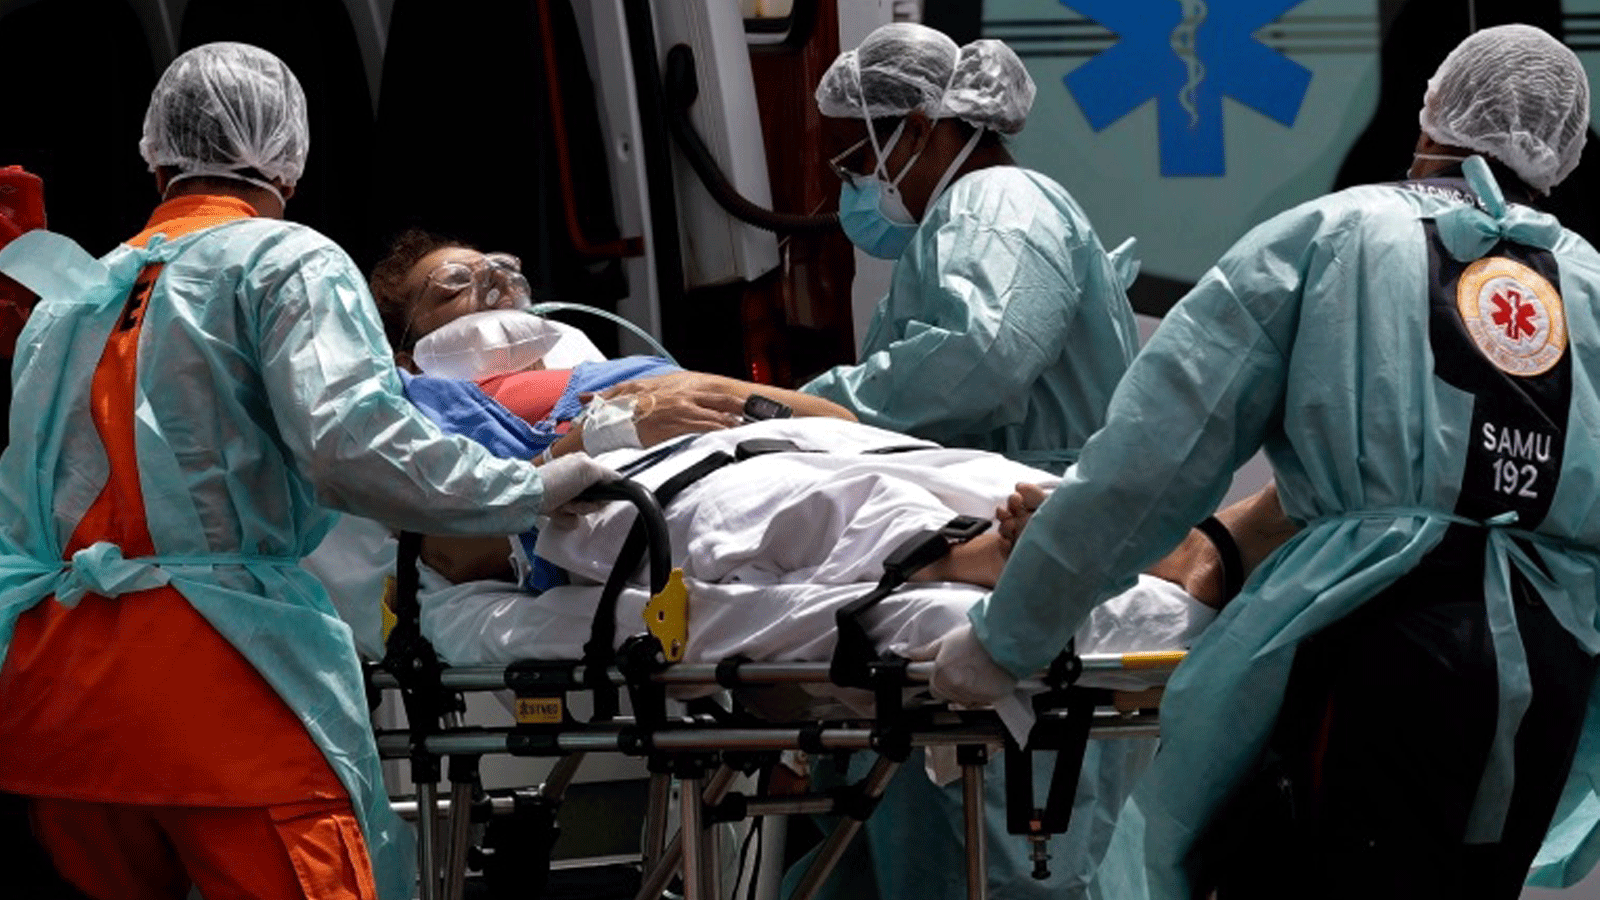 عمال الرعاية الصحية يأخذون مريضًا يشتبه في إصابته بـ COVID-19 من سيارة إسعاف في برازيليا/ البرازيل